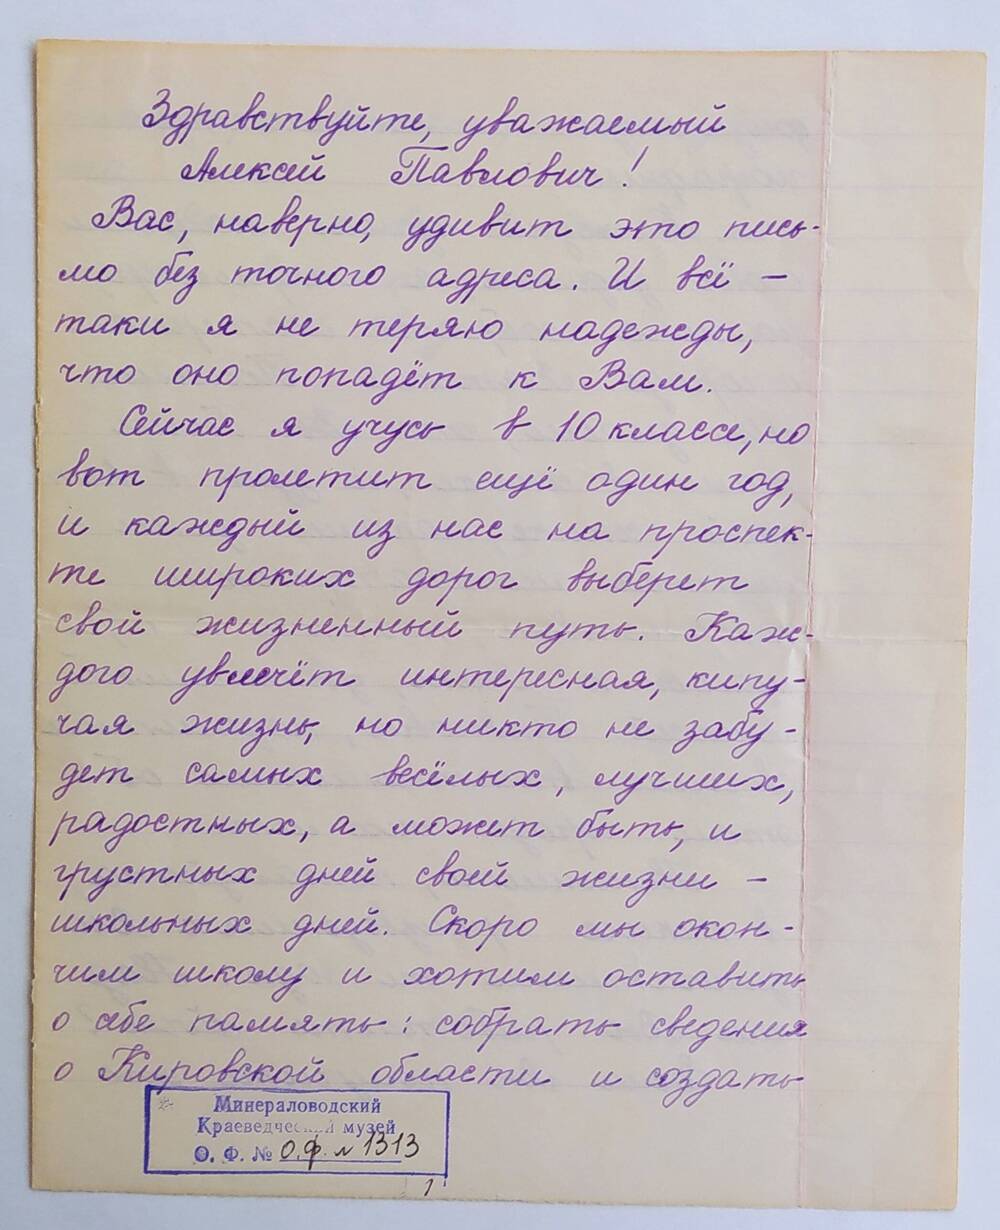 Письмо А.П. Бибику от неизвестного автора из г. Вятские Поляны.